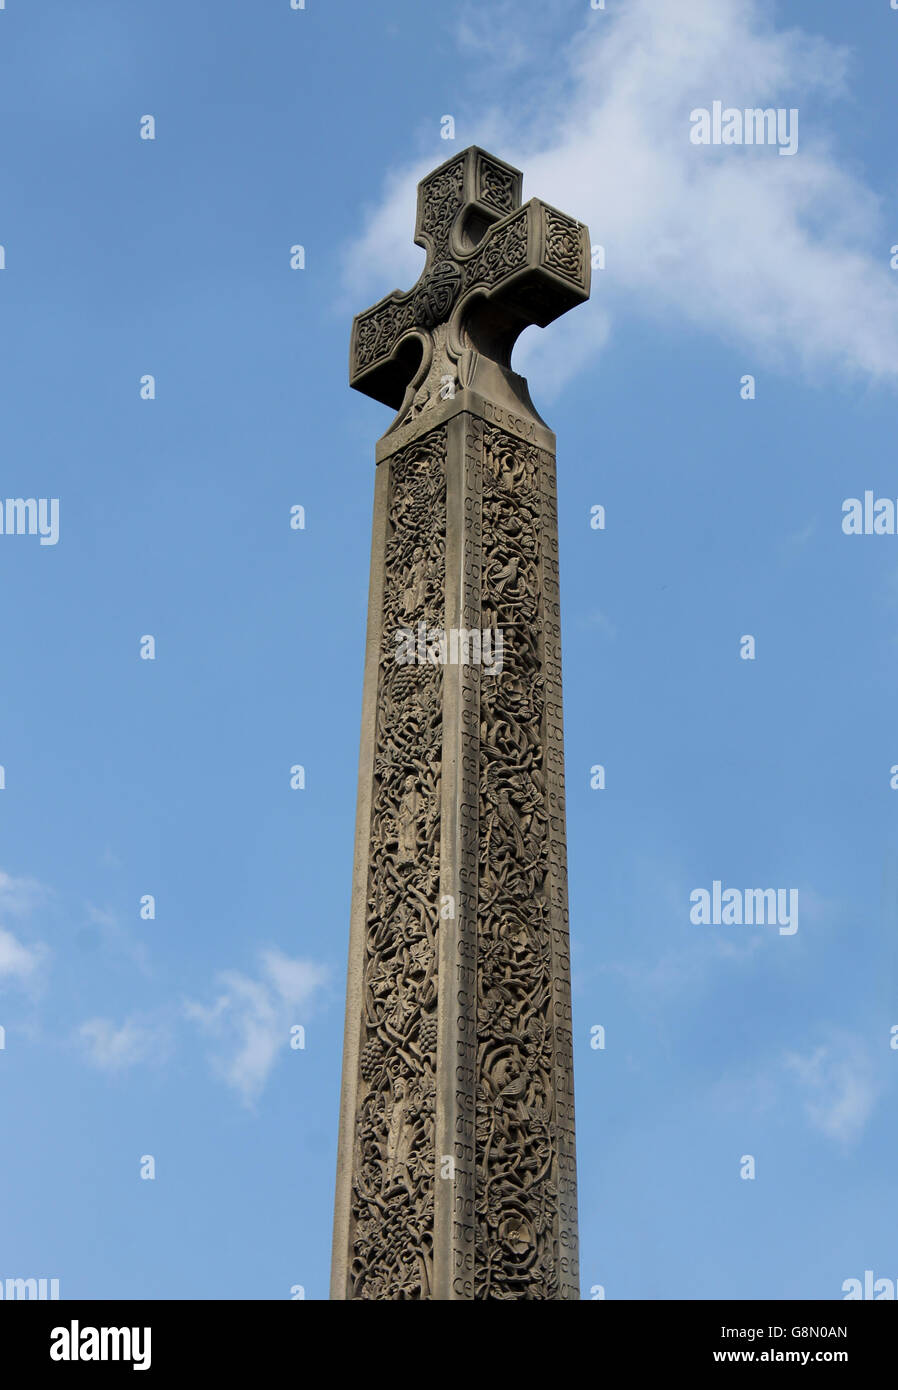 Croix celtique médiévale, l'abbaye de Whitby, North Yorkshire, Angleterre. Banque D'Images